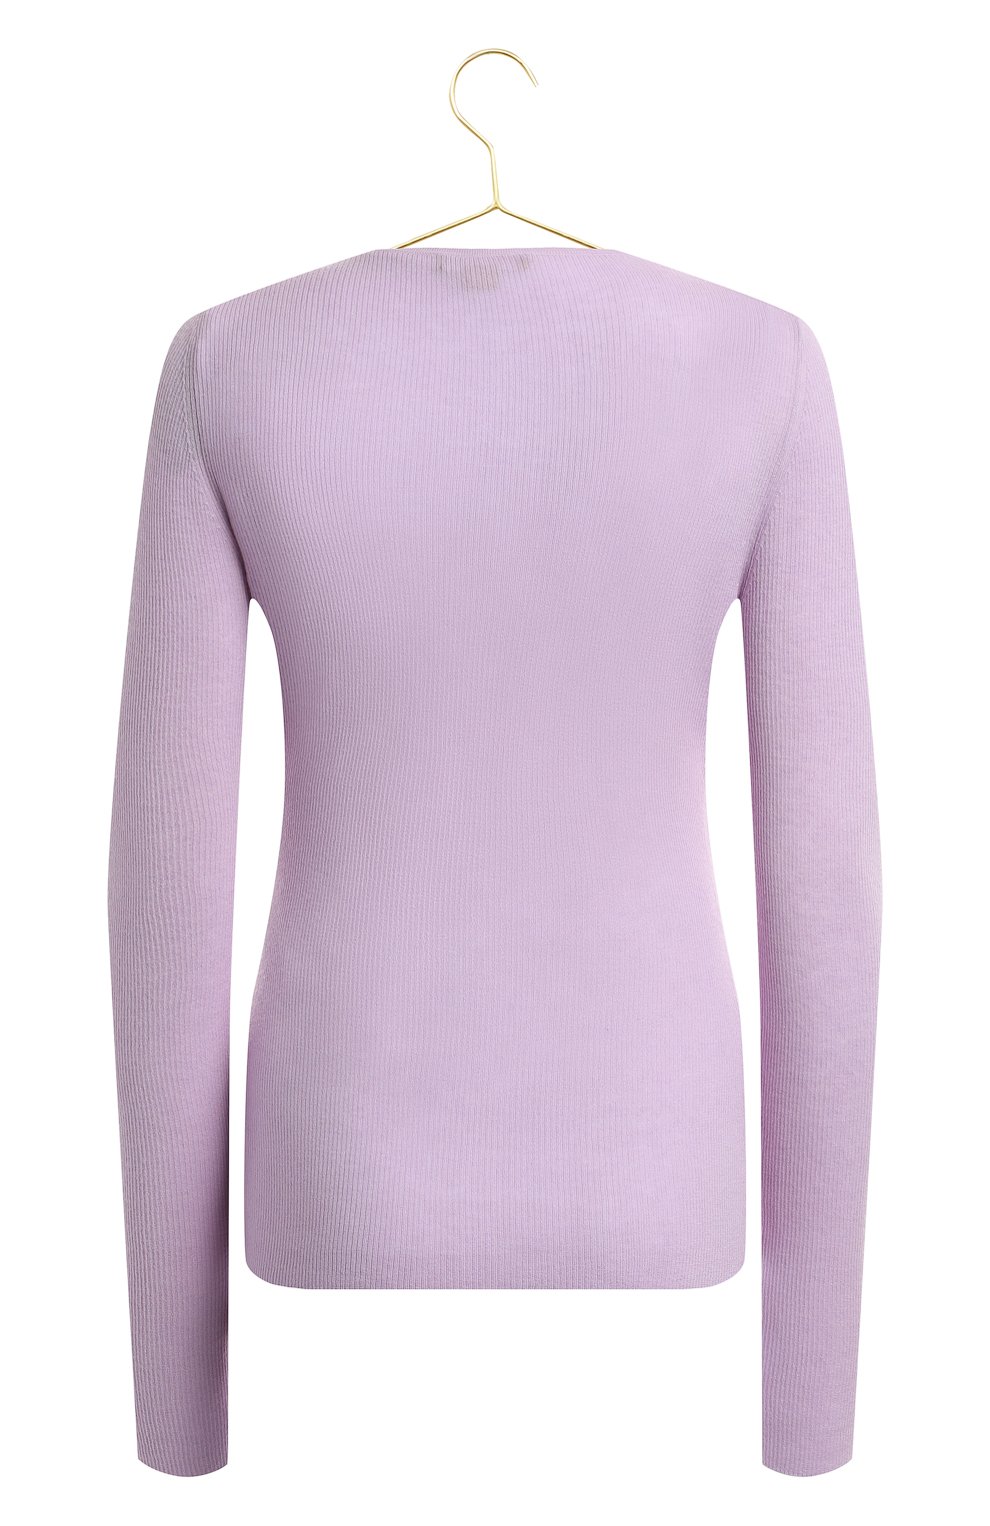 Кашемировый пуловер | Michael Kors Collection | Фиолетовый - 2